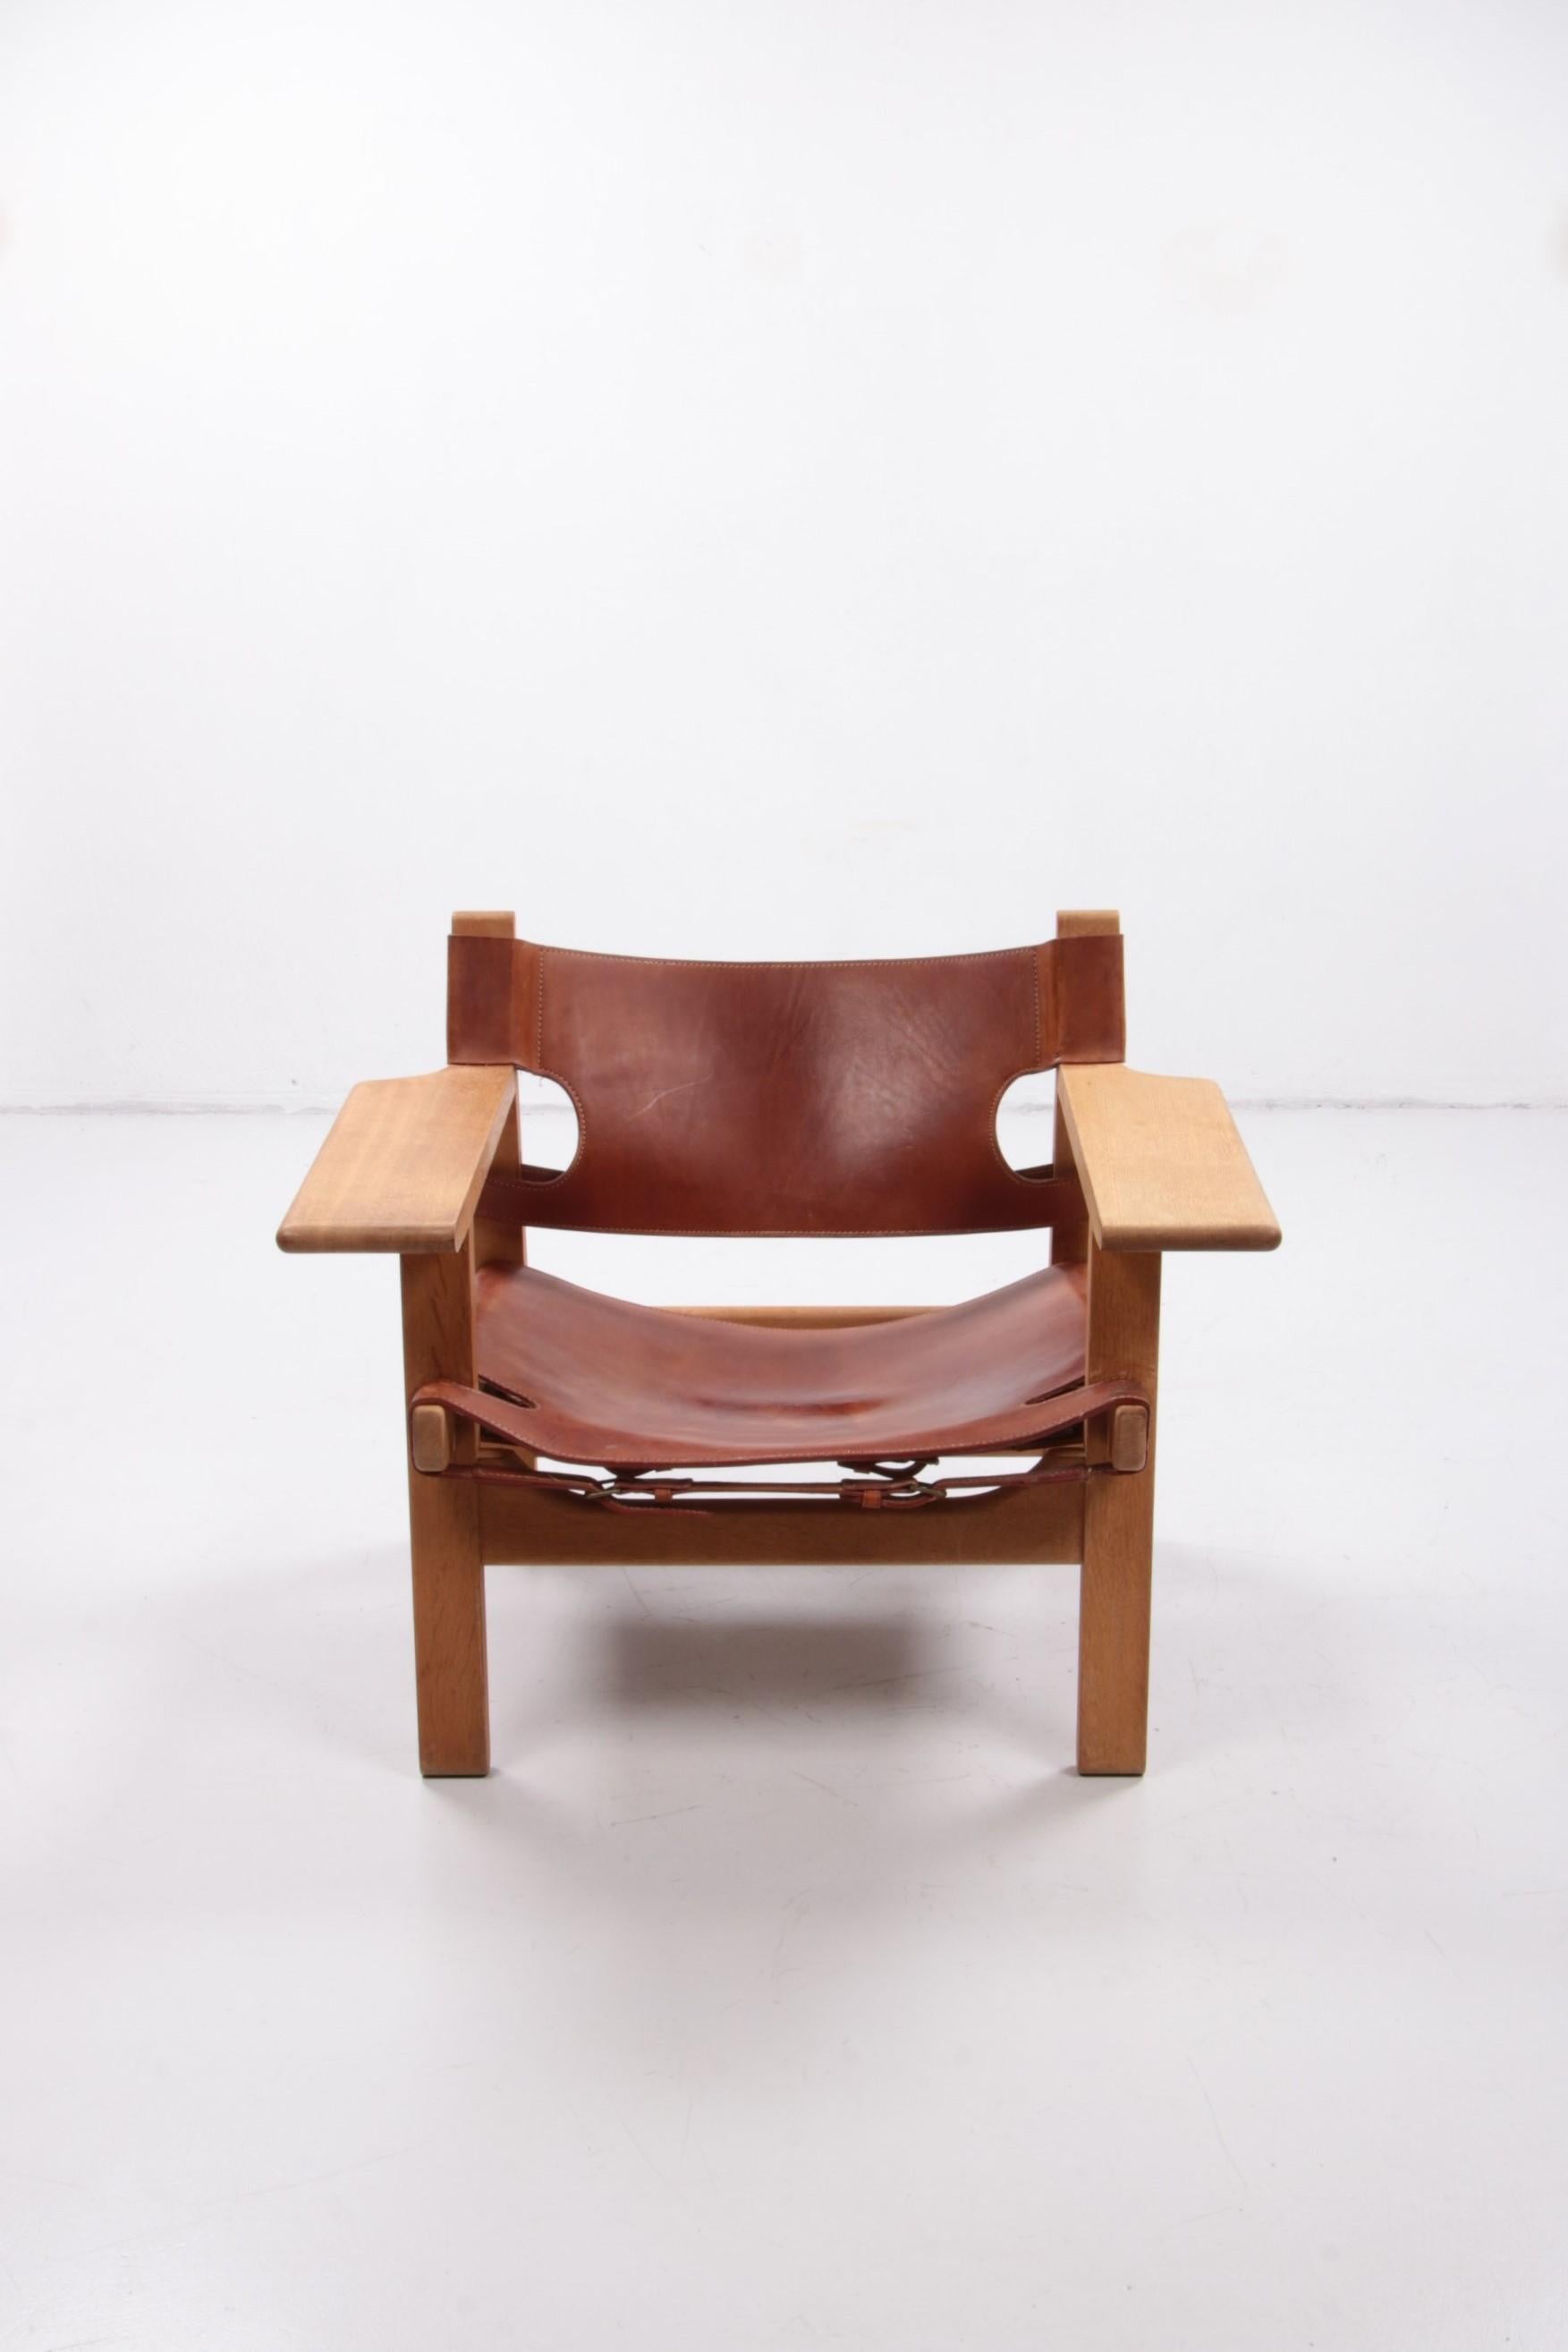 Scandinavian Modern Design Chair by Borge Mogensen, Also Called Spanisch Chair, 1960, Denmark For Sale